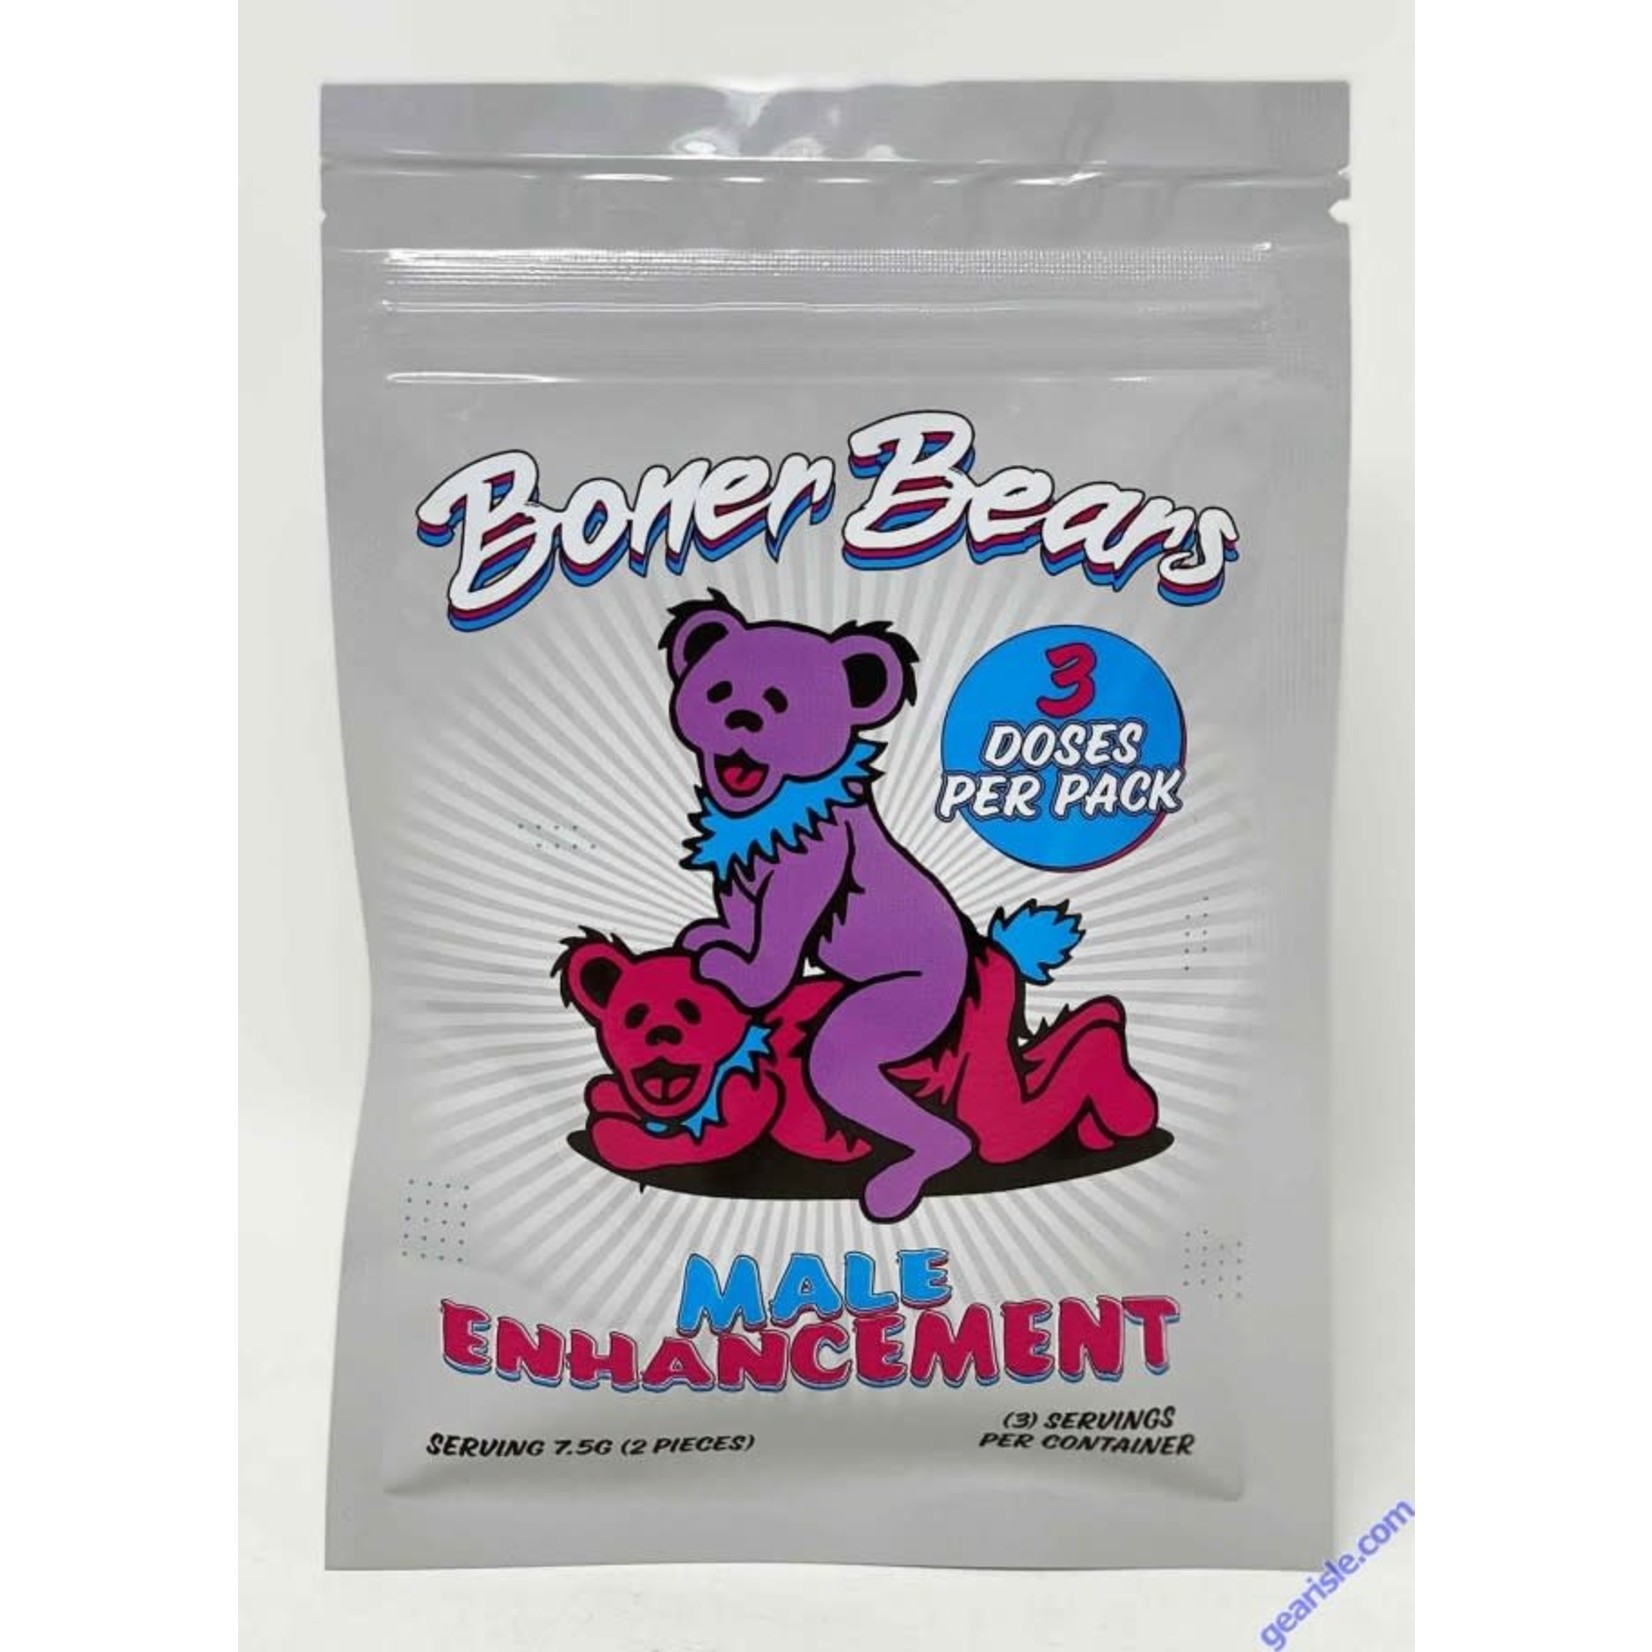 Boner Bears Gummy